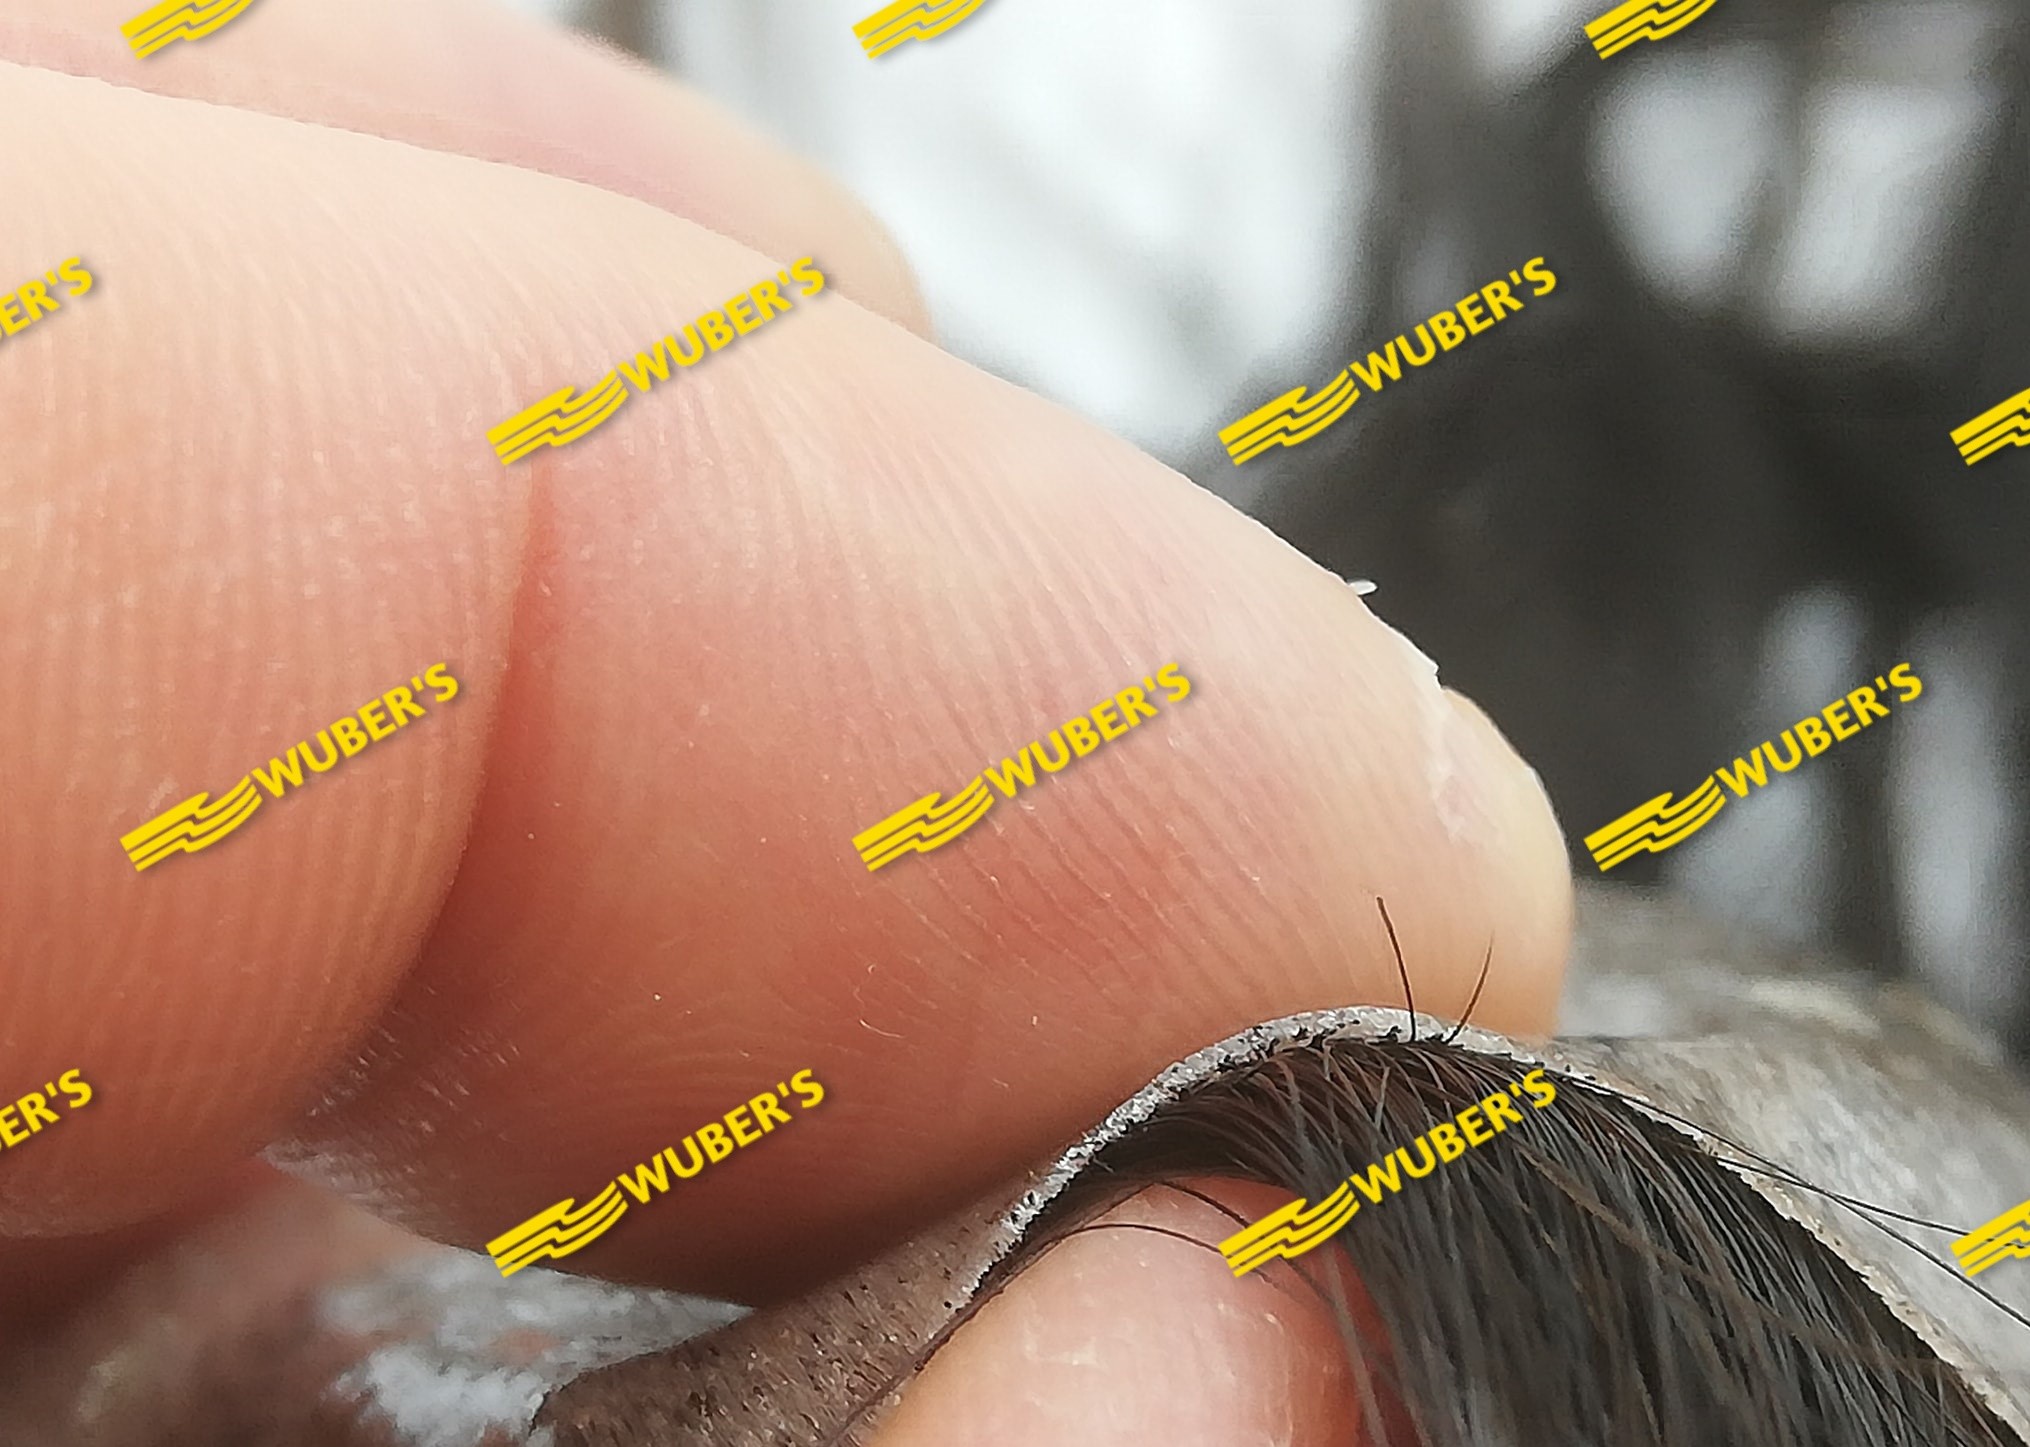 MICROPELLE - Protesi capelli su misura parziale MADE IN EUROPA con GARANZIA